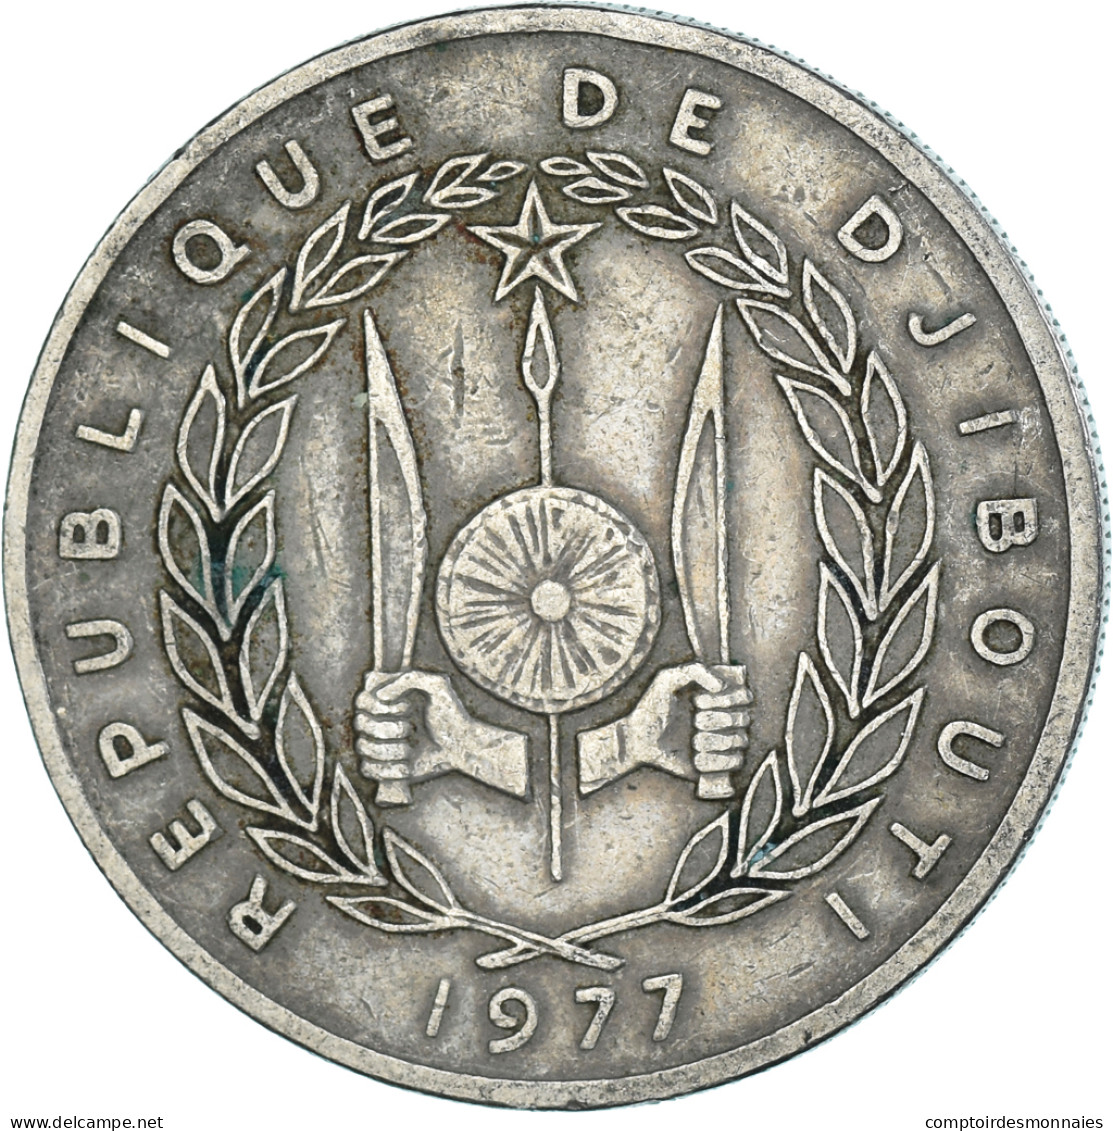 Monnaie, Djibouti, 100 Francs, 1977 - Gibuti